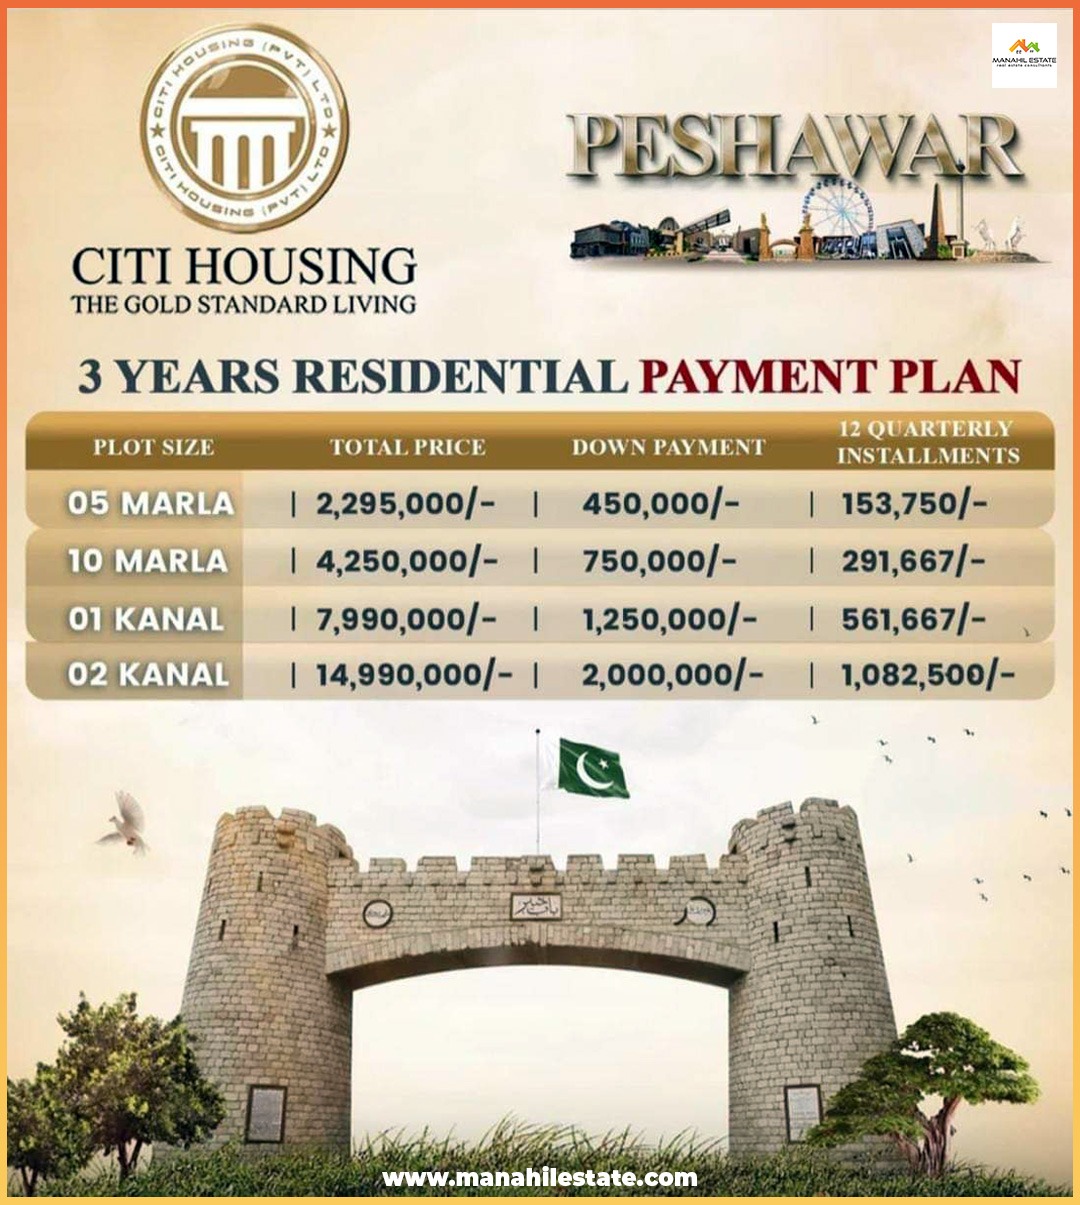 Citi Housing Peshawar Payment Plan